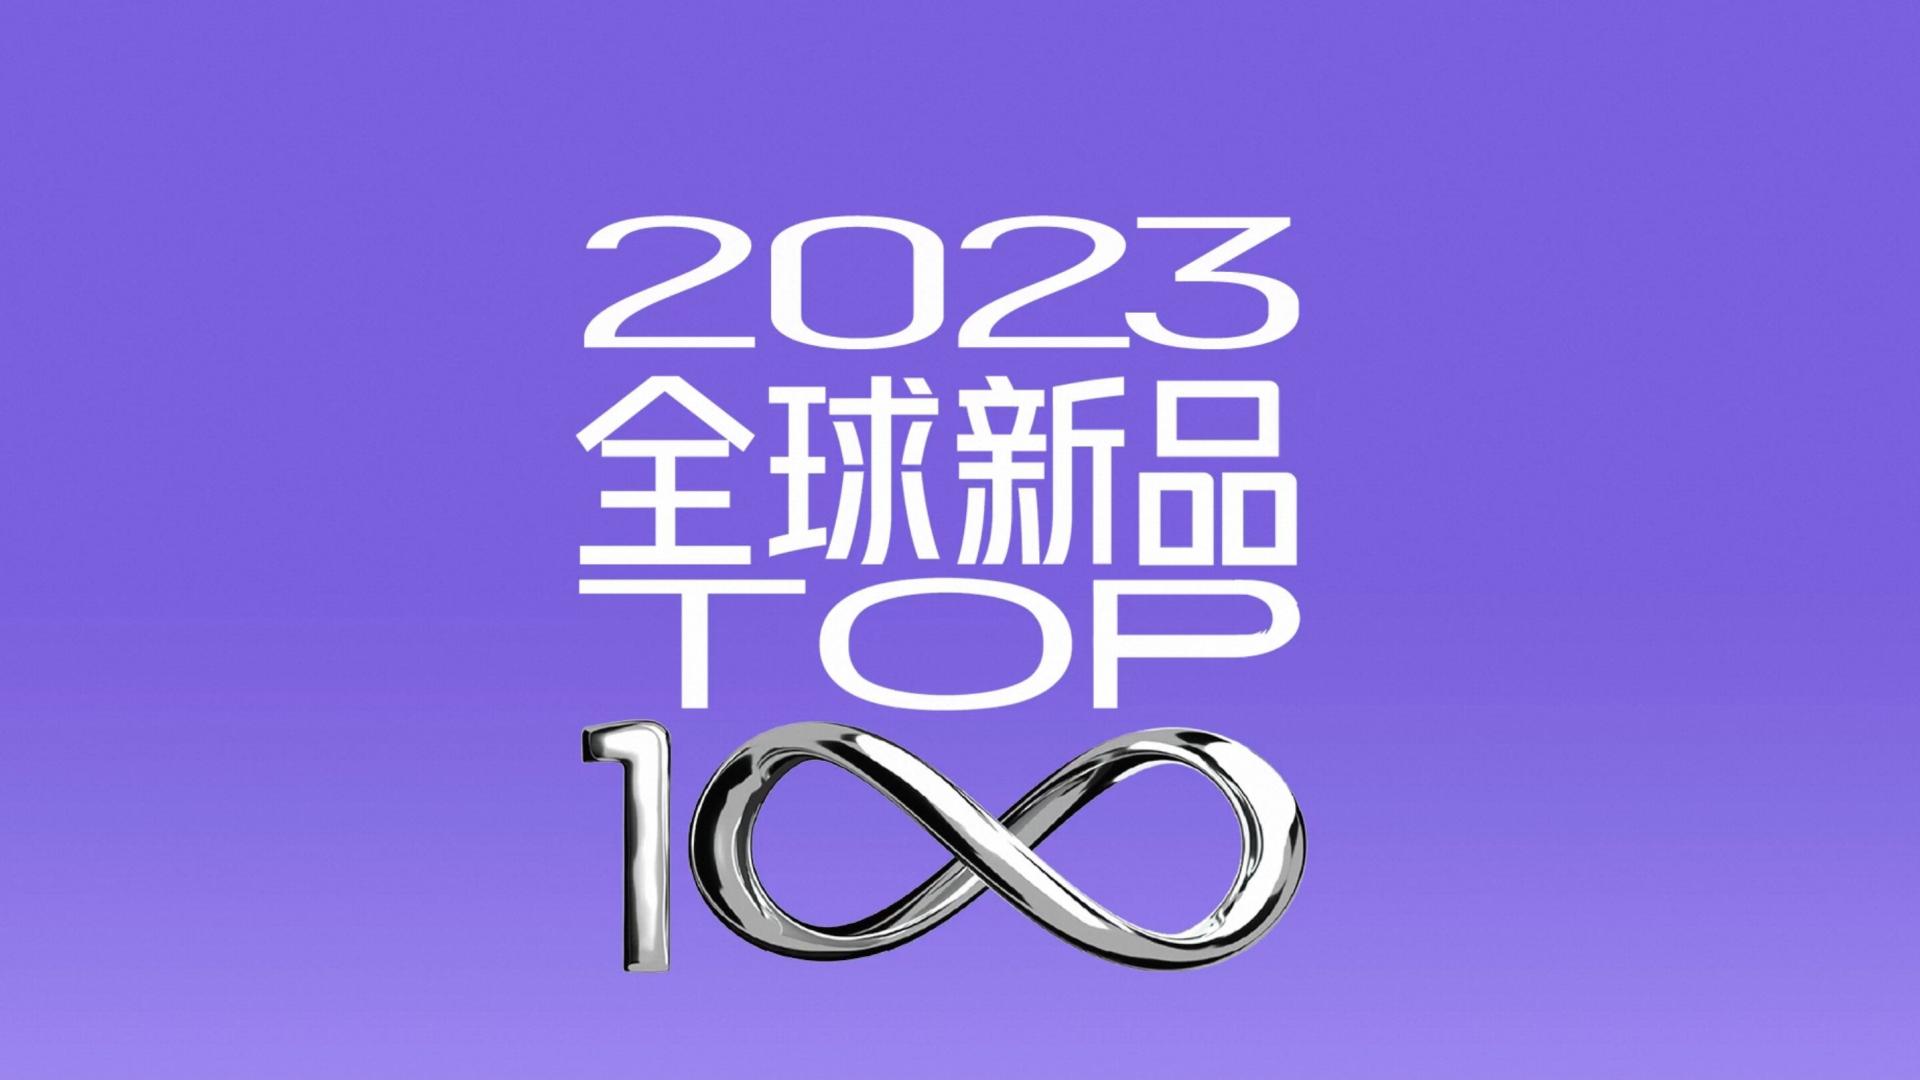 天猫国际2023全球TOP 100